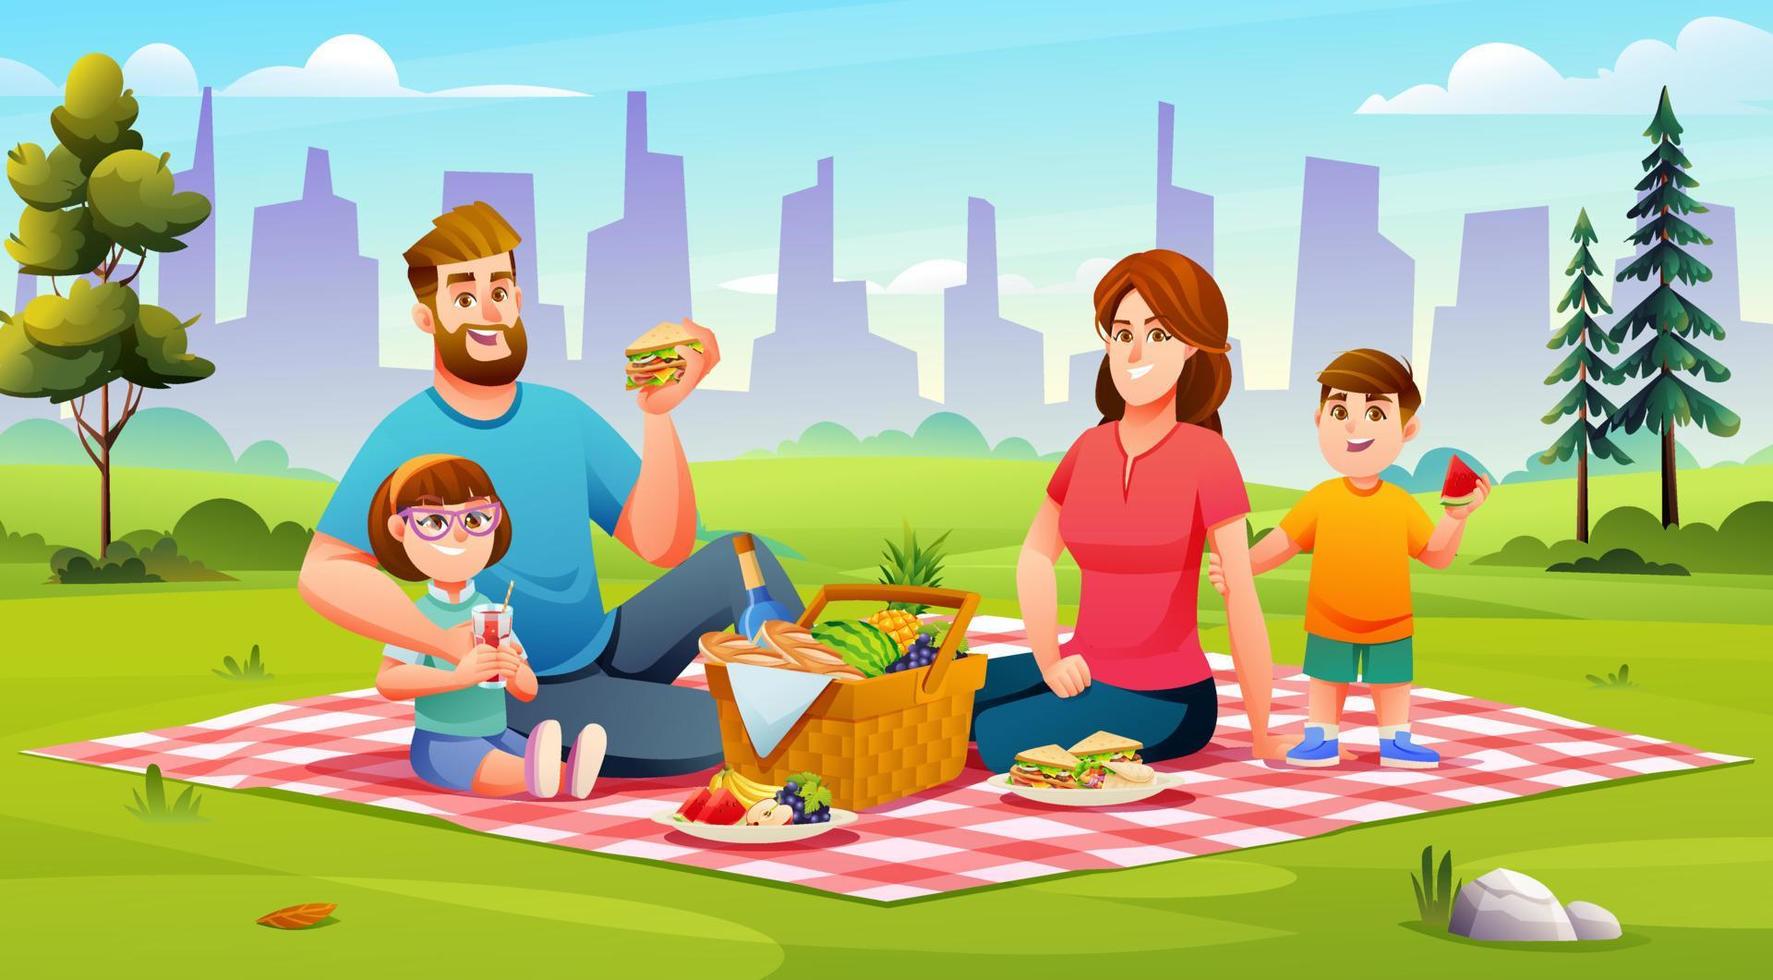 gelukkig familie hebben een picknick in de park. pa, mama, zoon, en dochter zijn resting samen in natuur vector illustratie